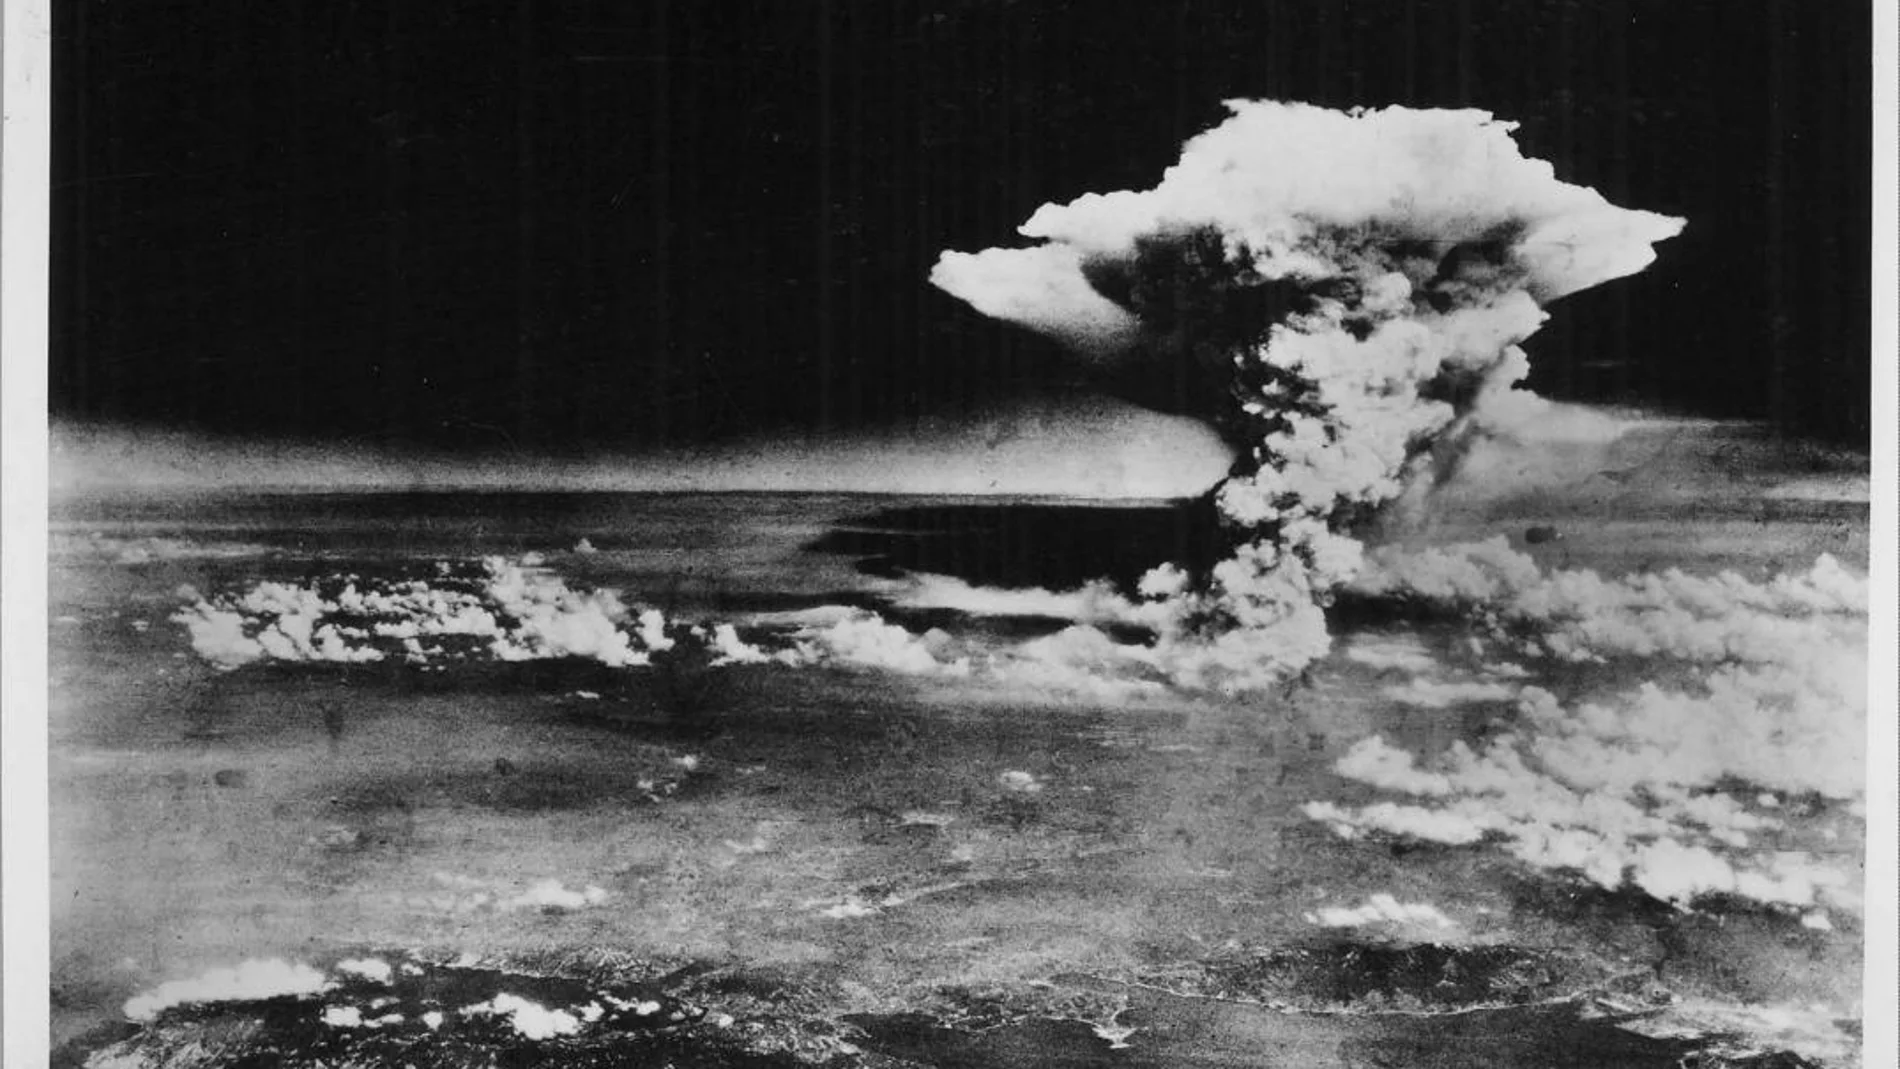 Imagen cedida por el Museo Hiroshima Peace Memorial que muestra la explosión de la bomba atómica sobre Hiroshima / Archivo